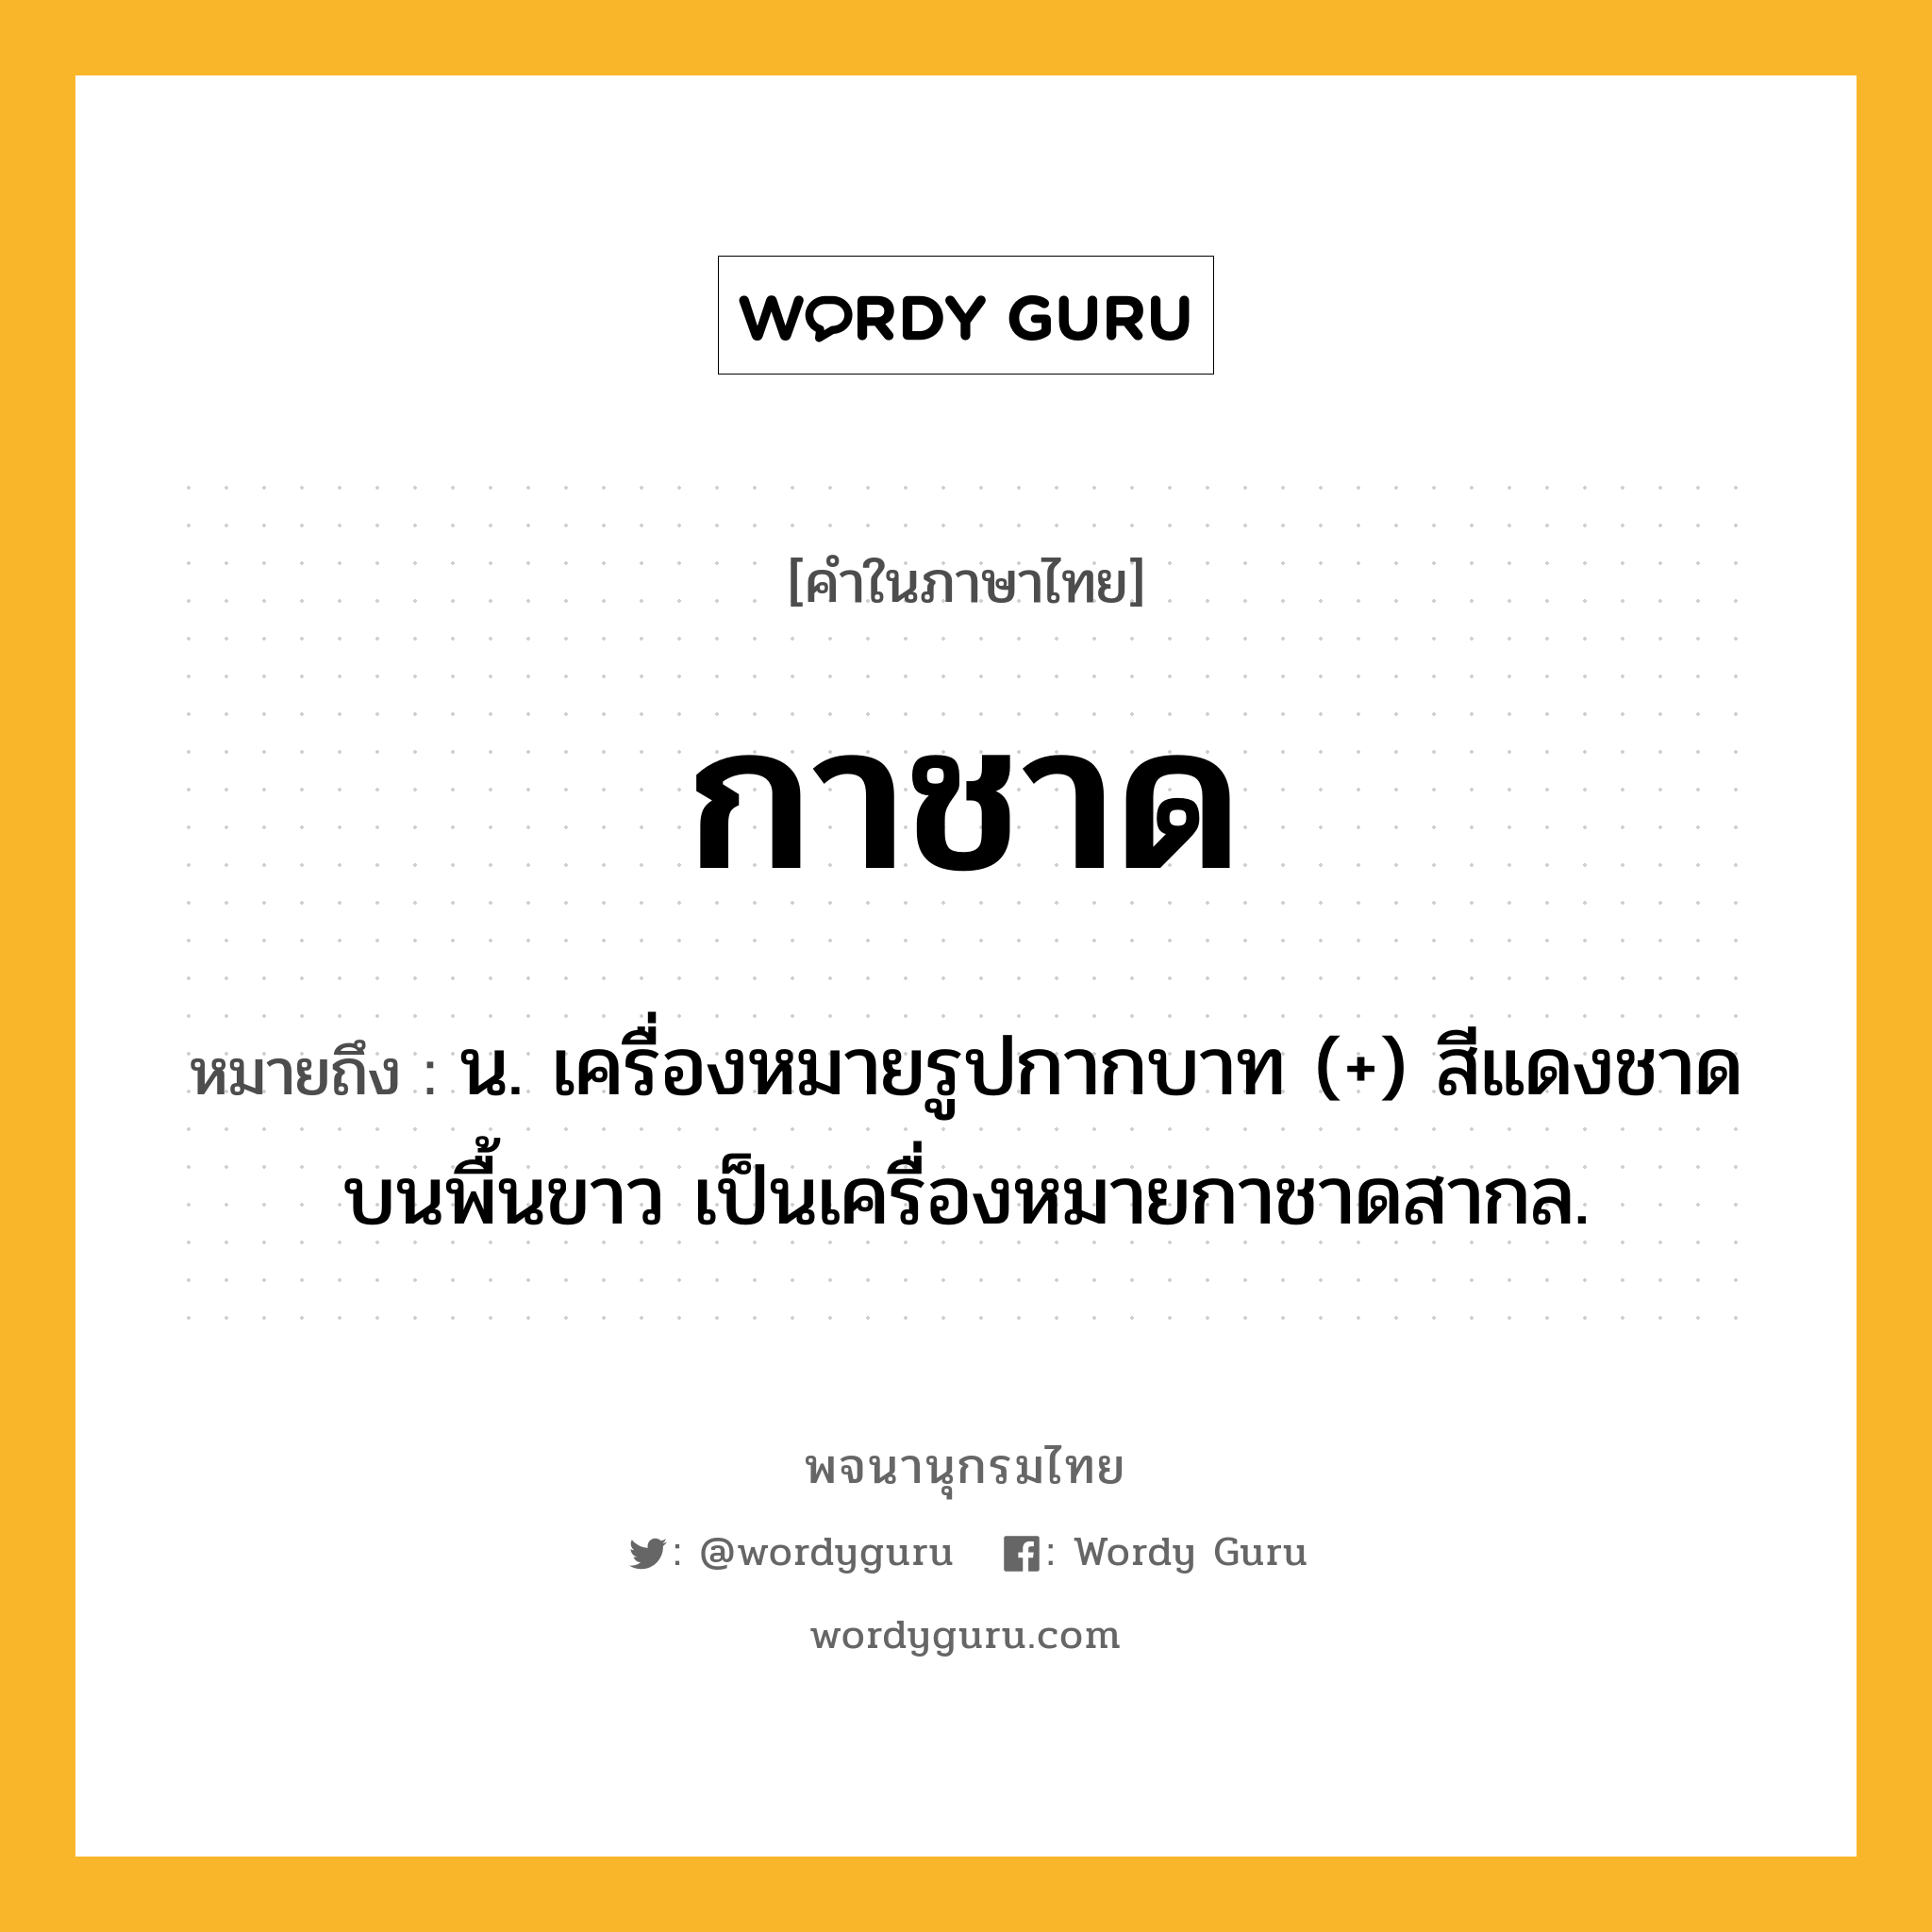 กาชาด หมายถึงอะไร?, คำในภาษาไทย กาชาด หมายถึง น. เครื่องหมายรูปกากบาท (+) สีแดงชาดบนพื้นขาว เป็นเครื่องหมายกาชาดสากล.